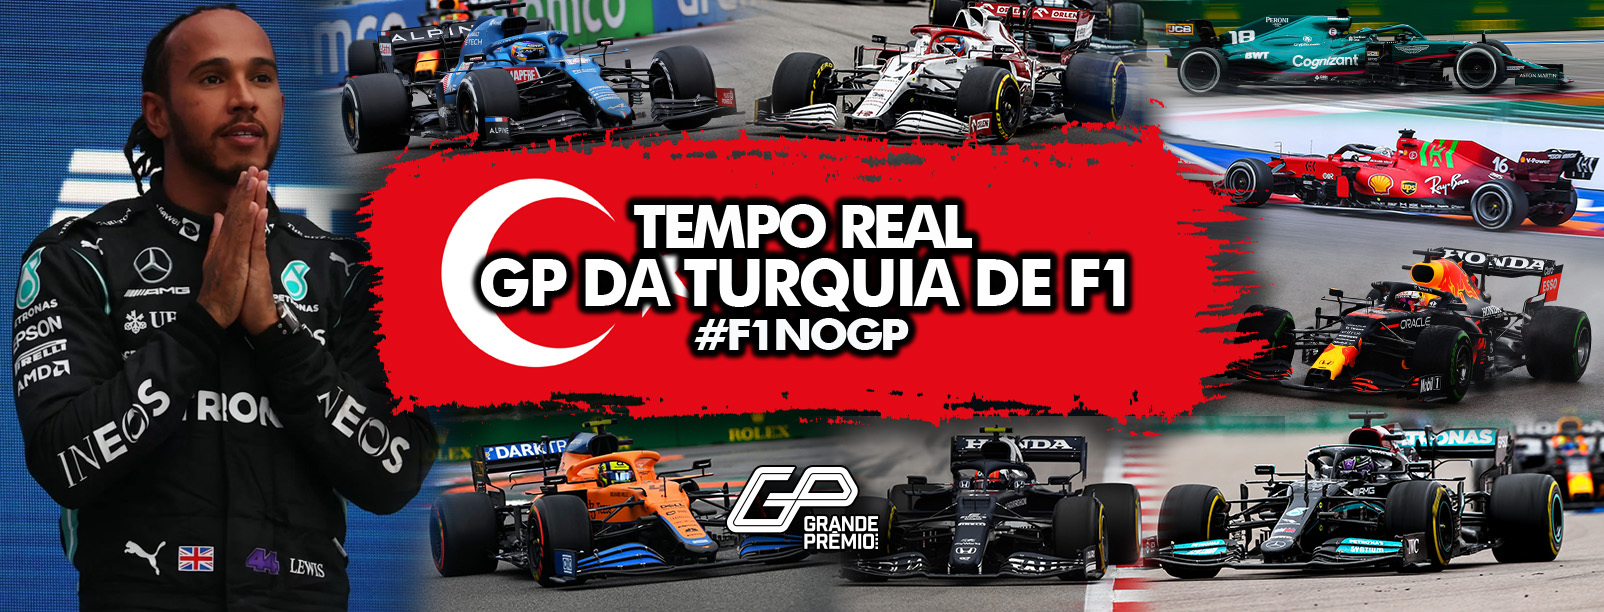 F1 ao vivo: veja tudo sobre o GP da Turquia - Jogada - Diário do